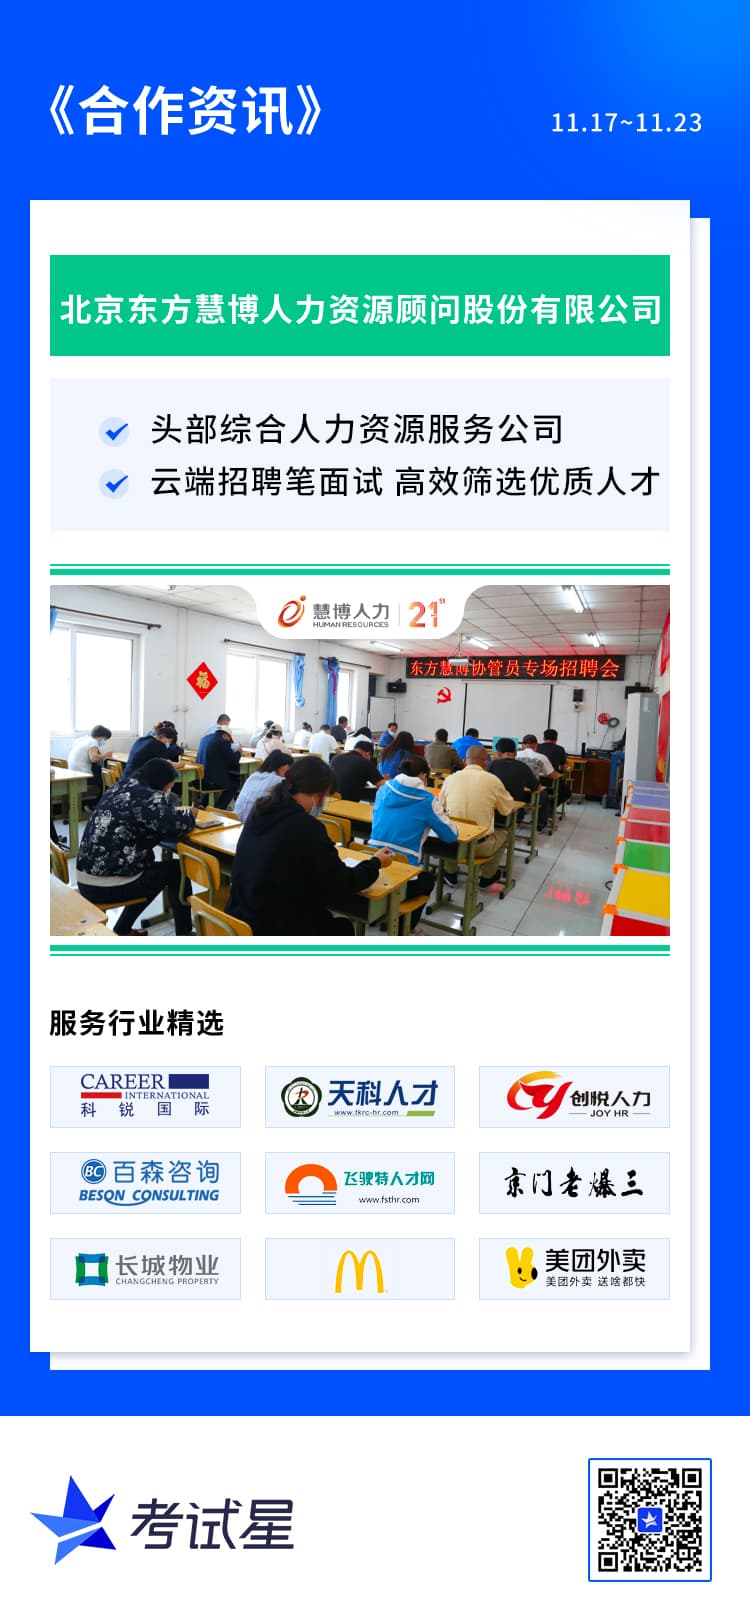 北京东方慧博人力资源顾问股份有限公司-在线笔面试平台